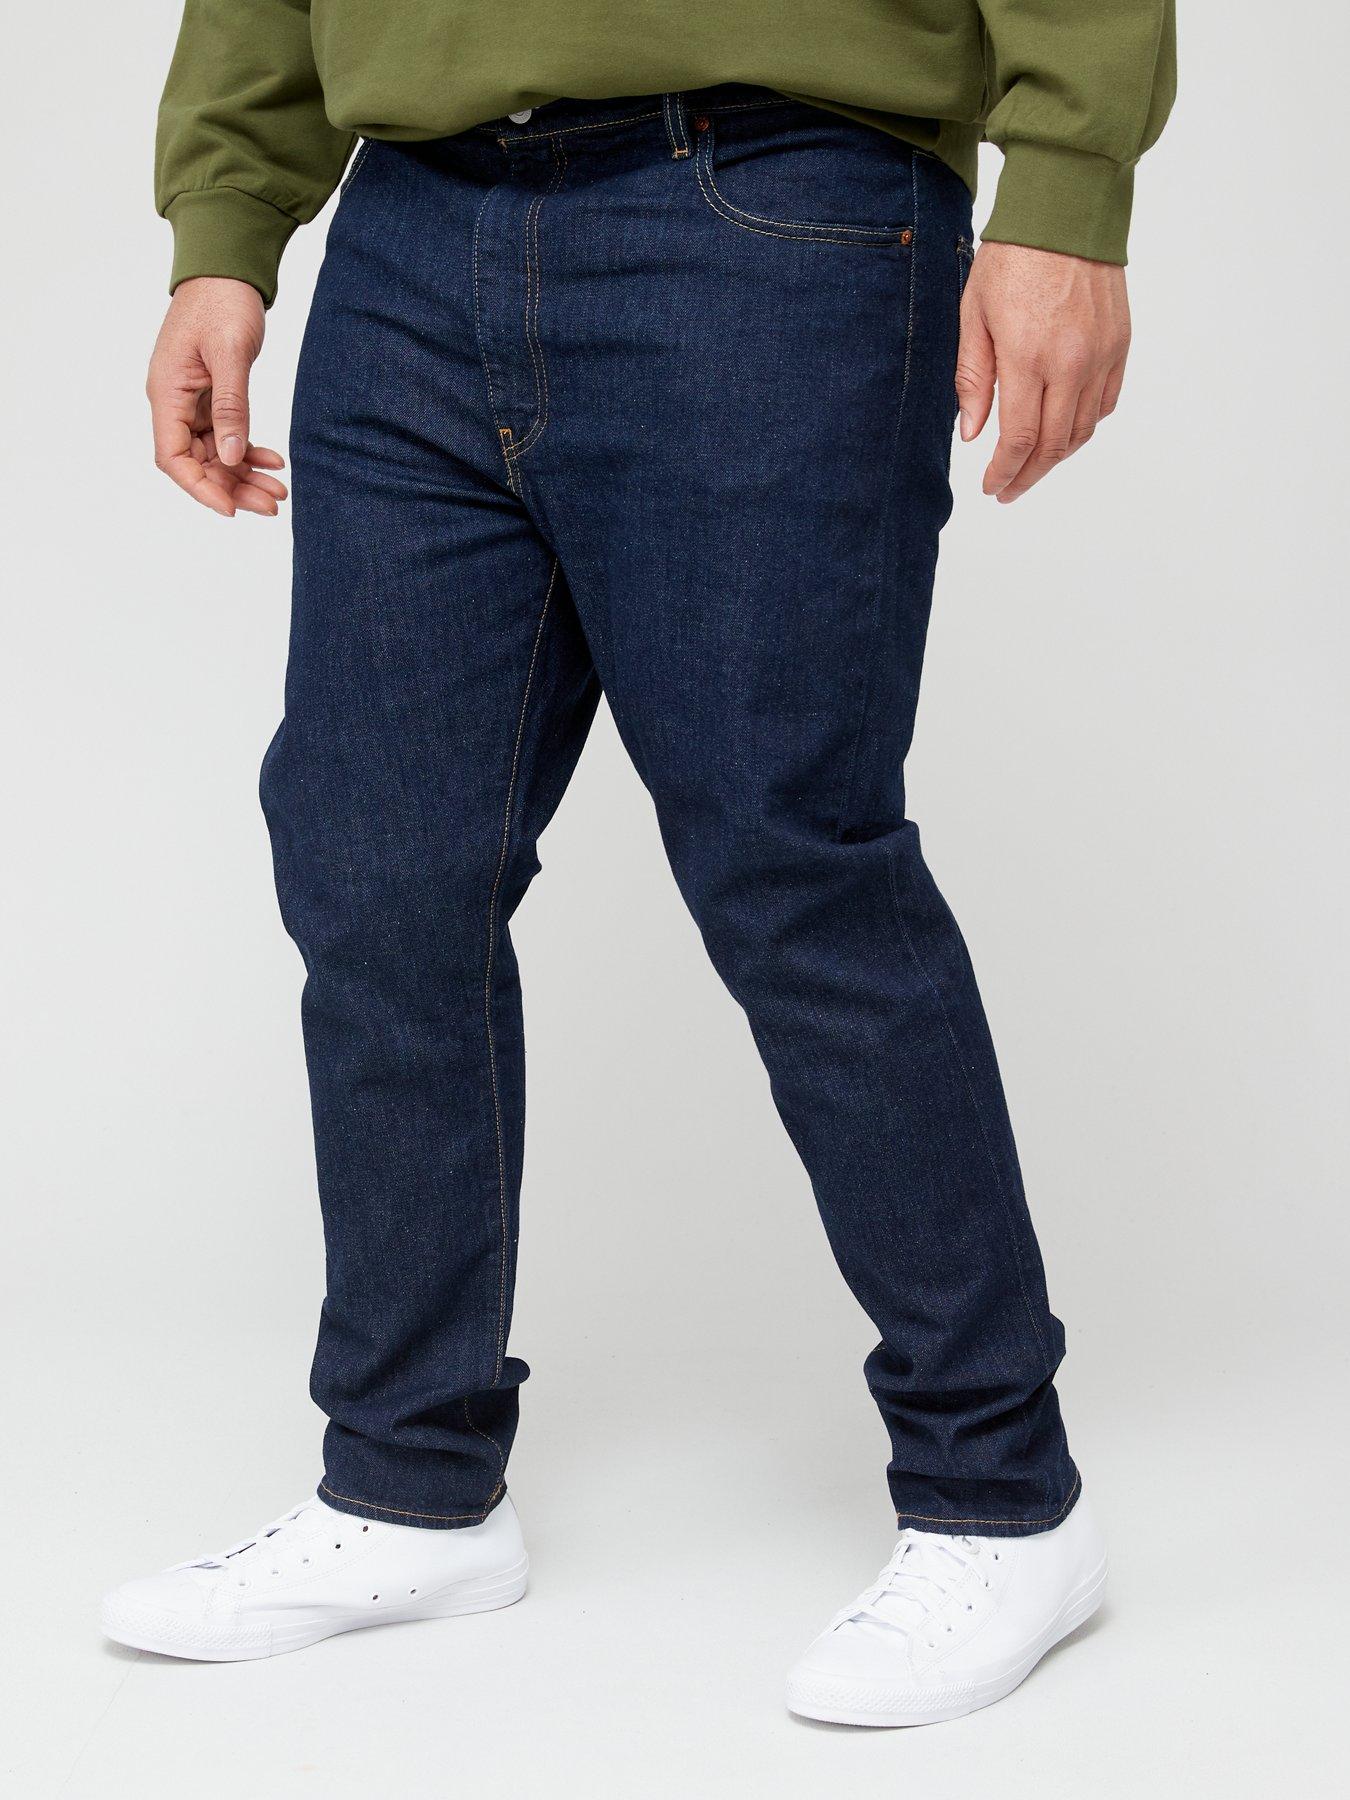 Levi's Levi's Big & Tall 512 Slim Taper Fit Jeans - Dark Wash 